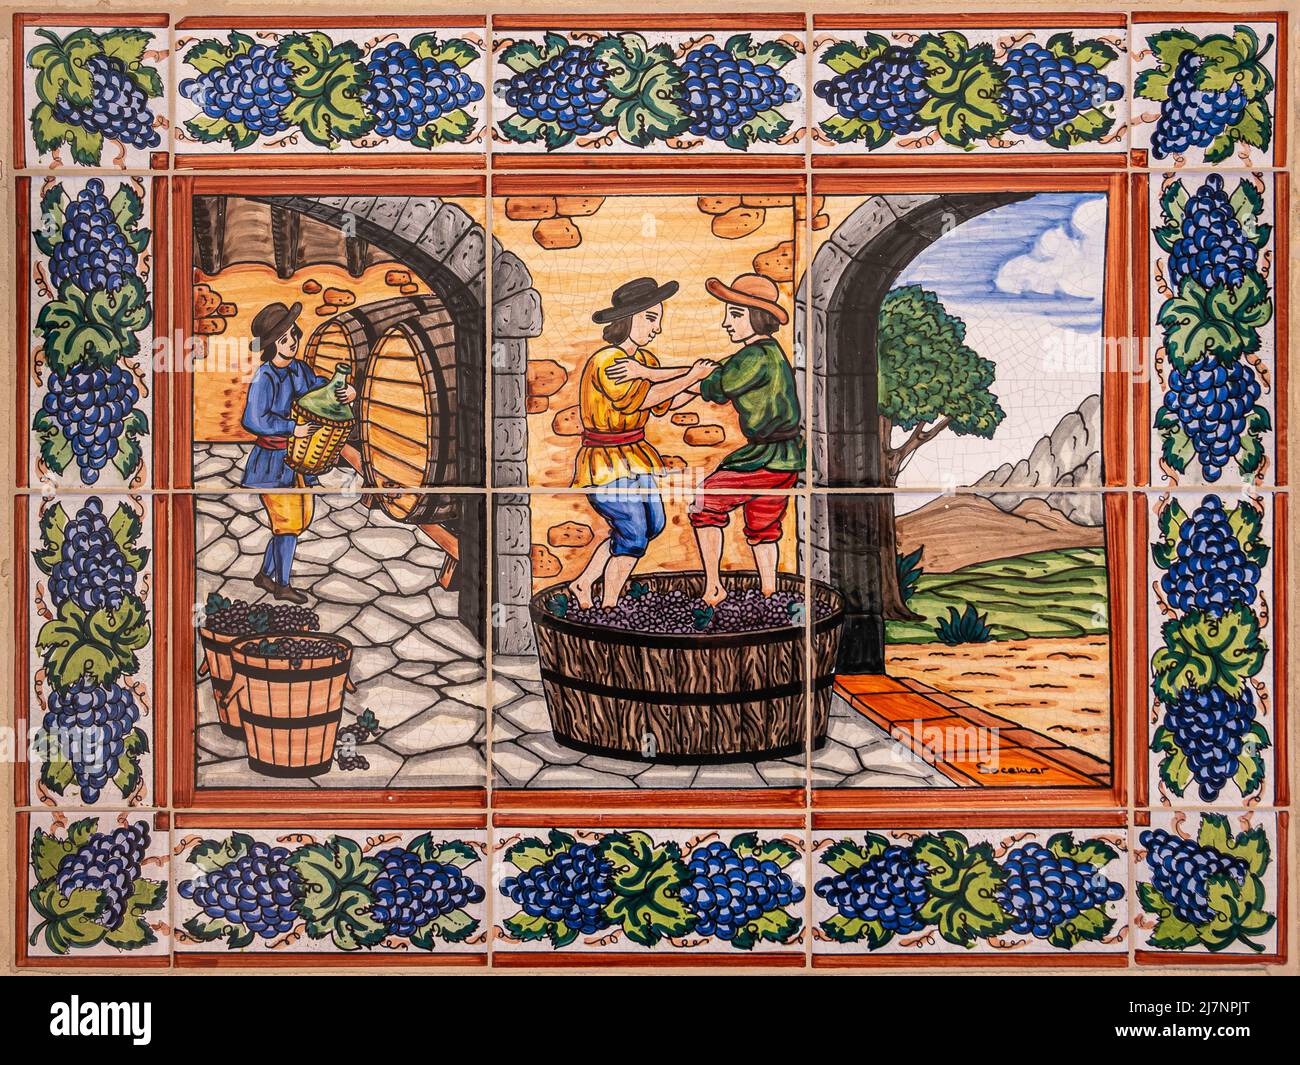 Temecula, CA, USA - 12. April 2022: Europa Village. Wandfliesen Malerei, Phase 4/6 der Weinherstellung. Warme Farben zeigen 3 männliche Figuren, die Trauben pressen Stockfoto